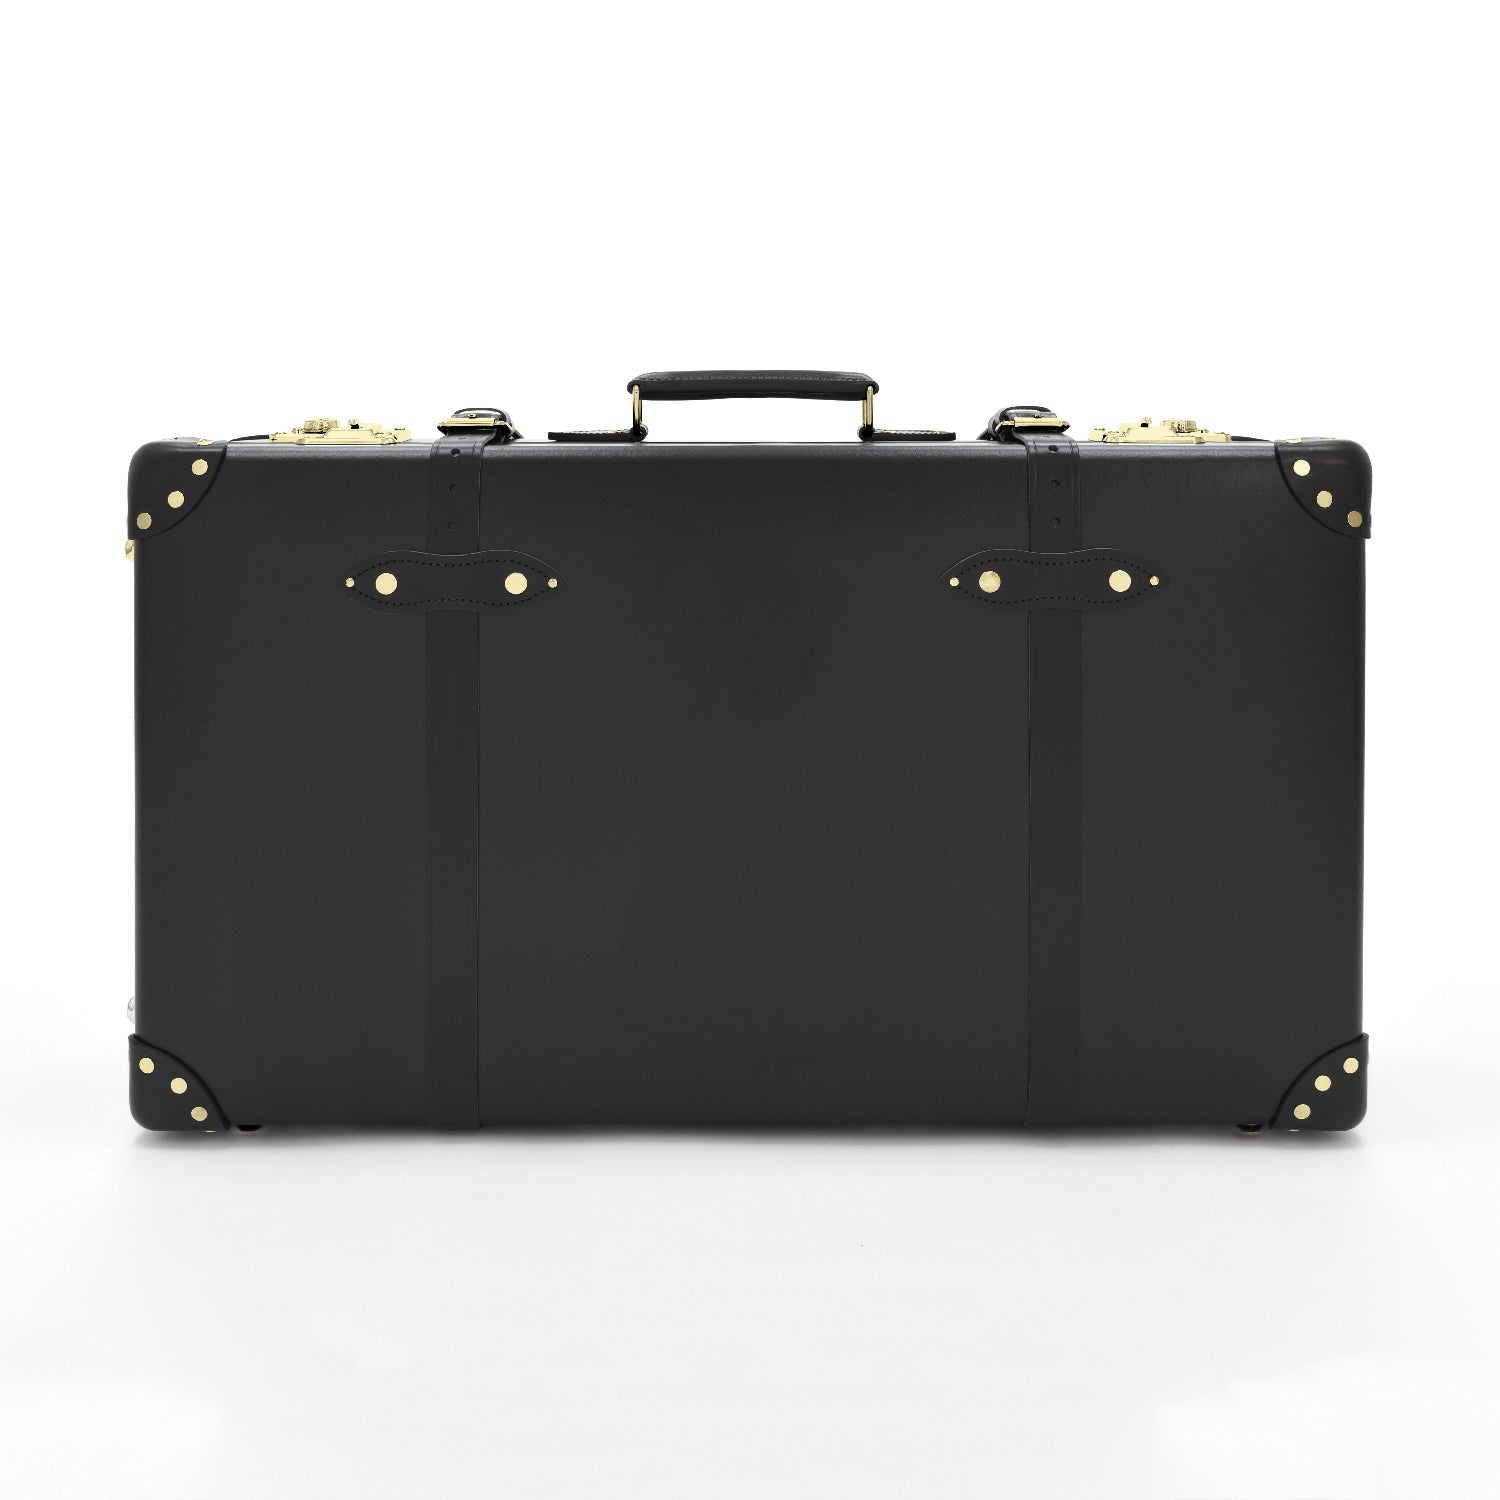 センテナリー · ラージ スーツケース | ブラック | グローブ 